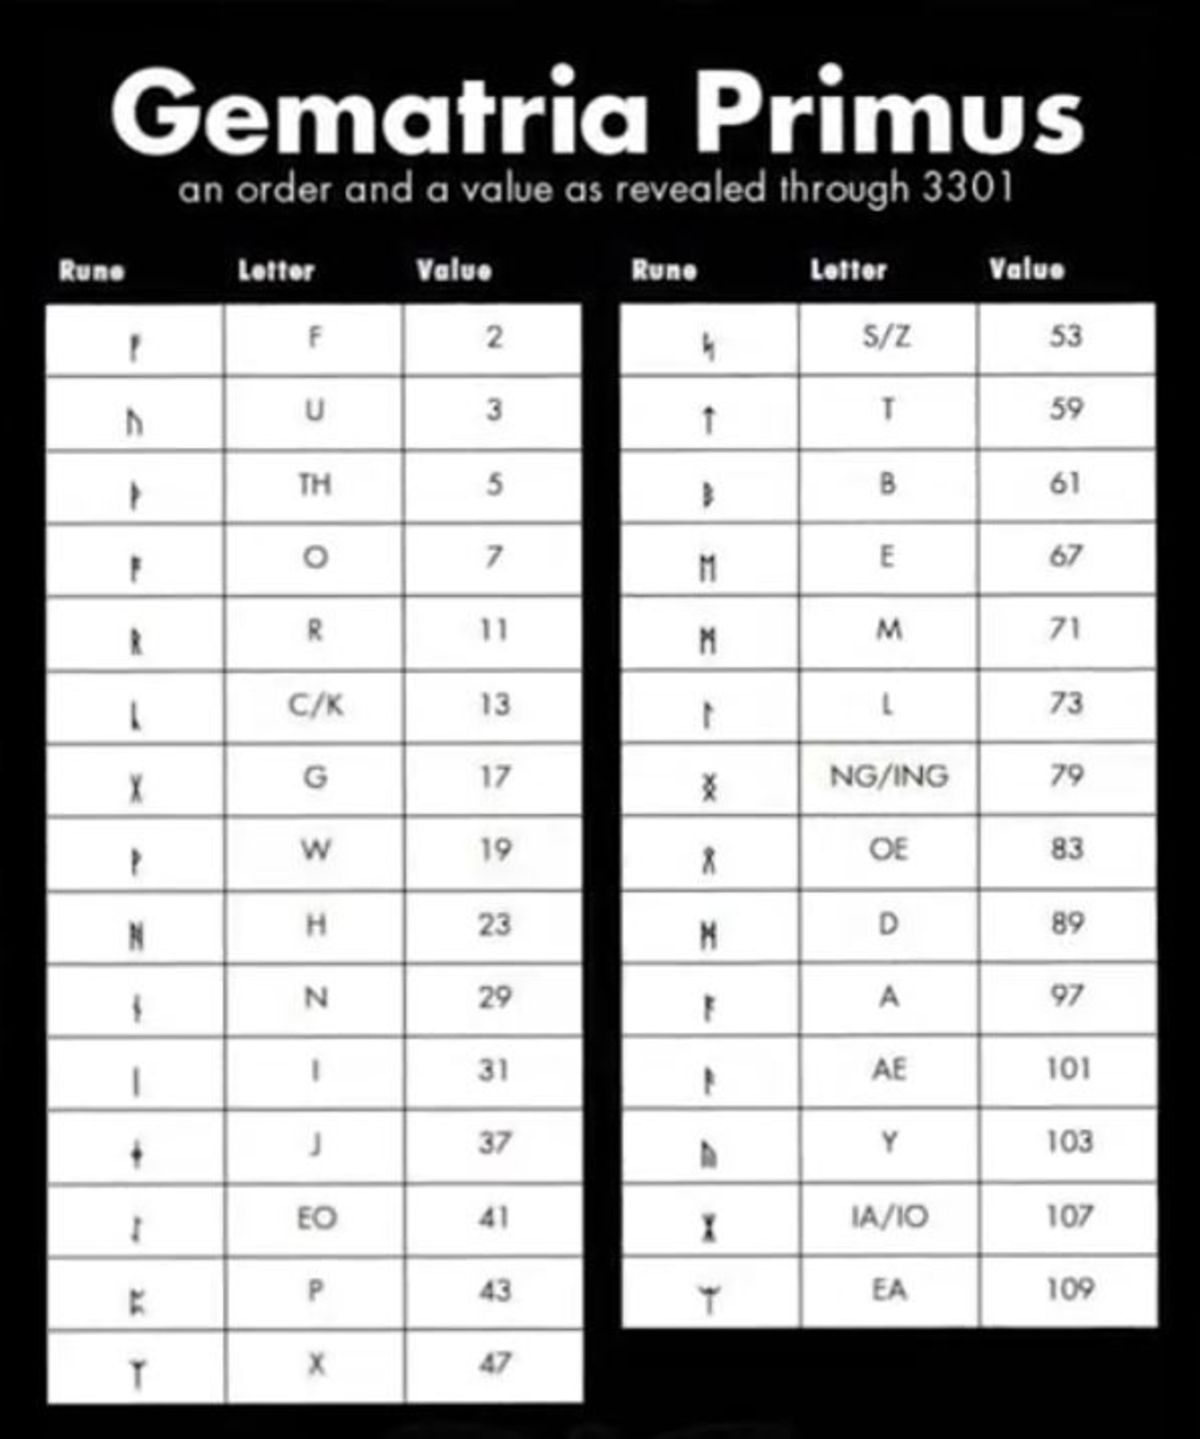 سیکادا ۳۳۰۱: جدول Gematria Primus